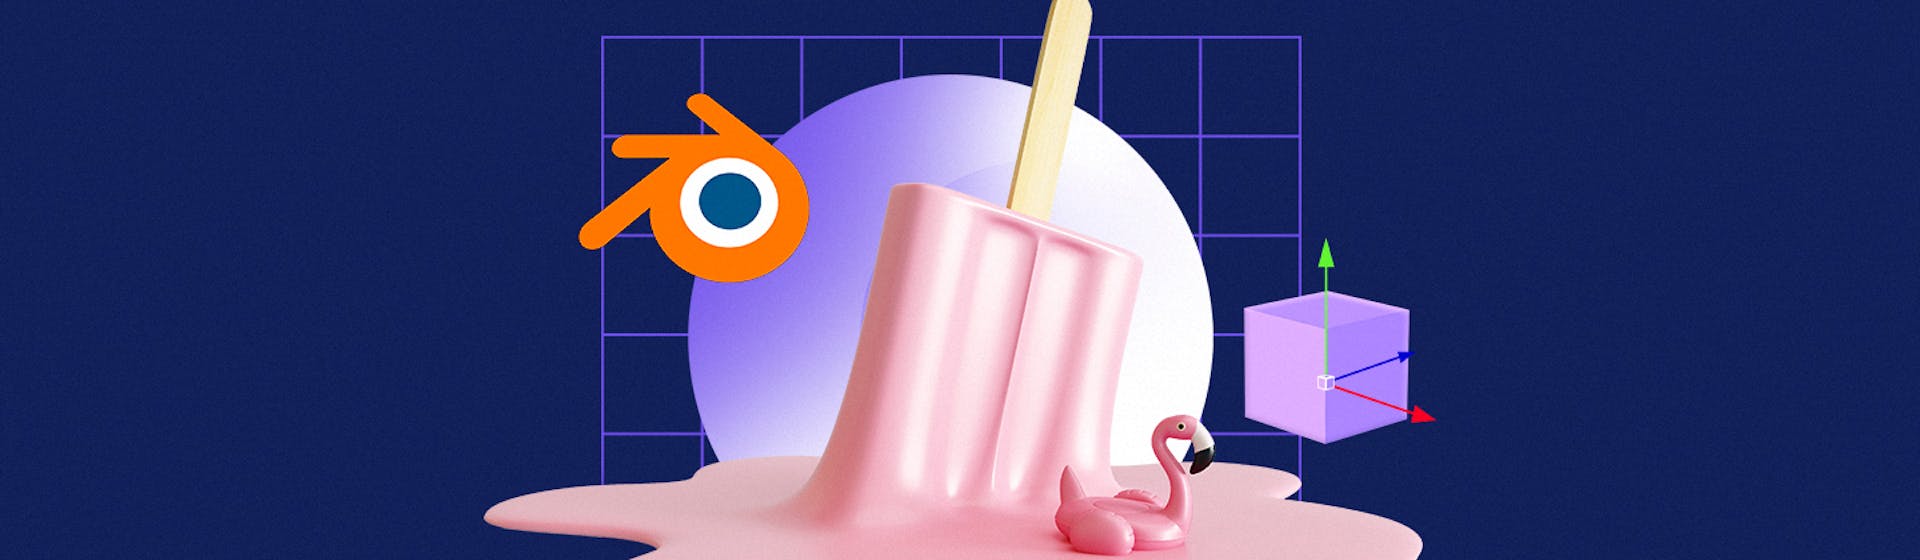 Aprende cómo usar Blender paso a paso para “sacarle el jugo” a este software de animación gratuito